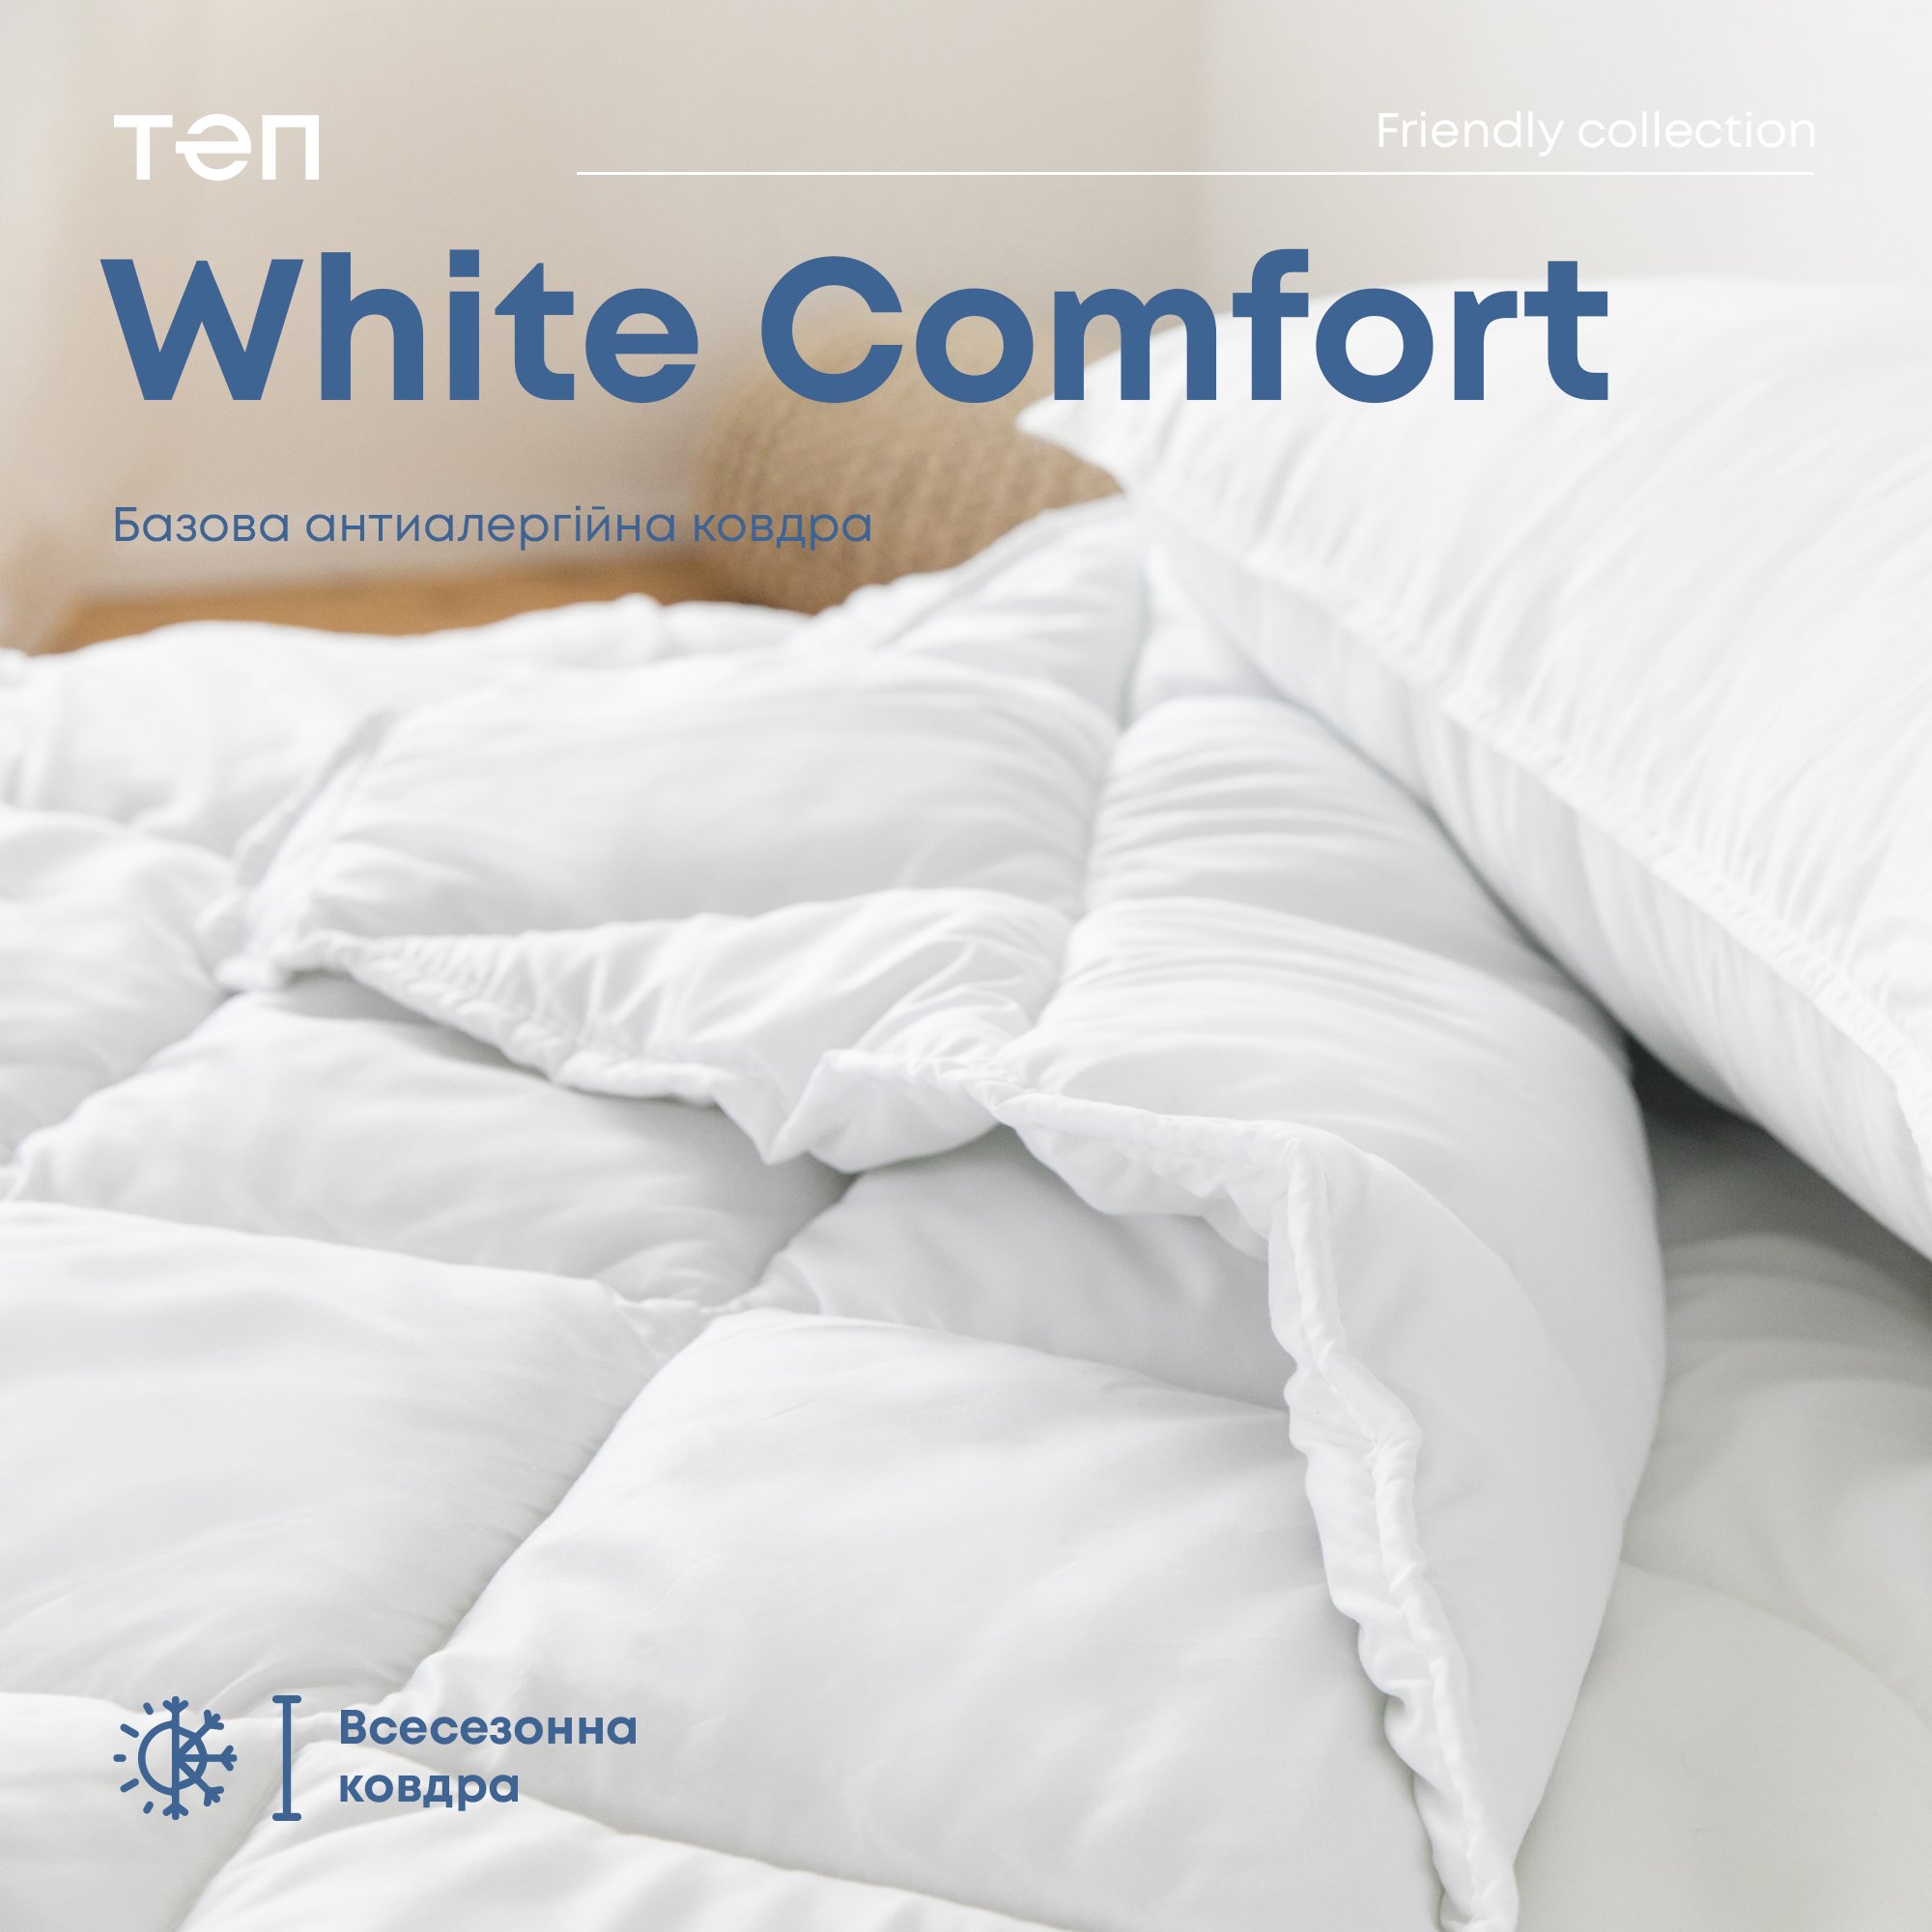 Ковдра ТЕП White Comfort 140x205 біла (1-02556_00000) - фото 3